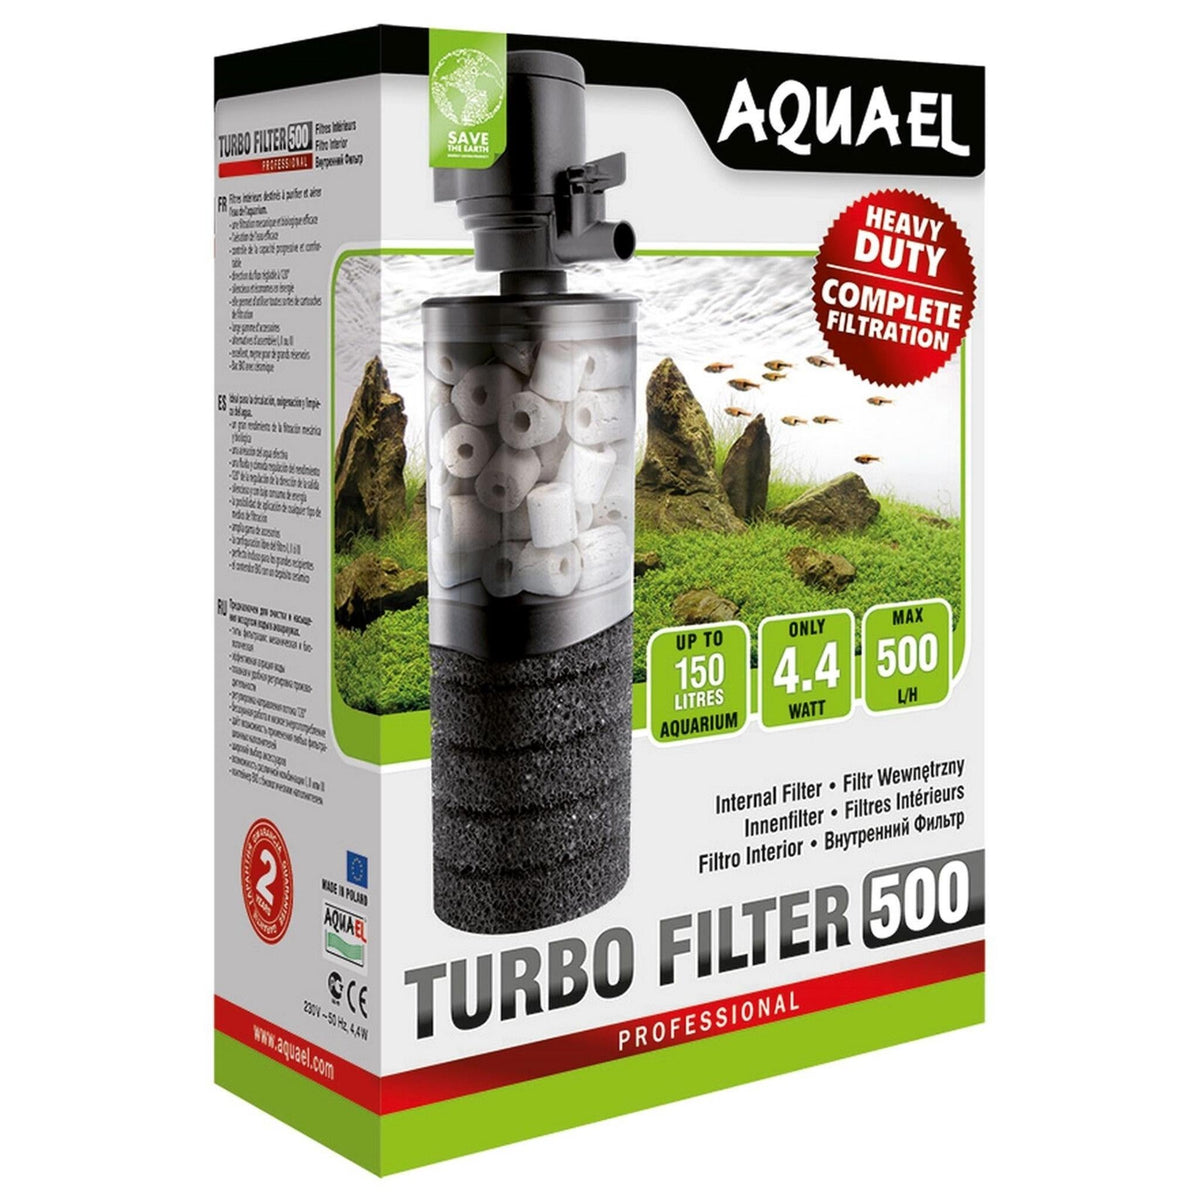 AQUAEL Turbo-Filter 500 - Nano Tanks Australia Aquarium Shop